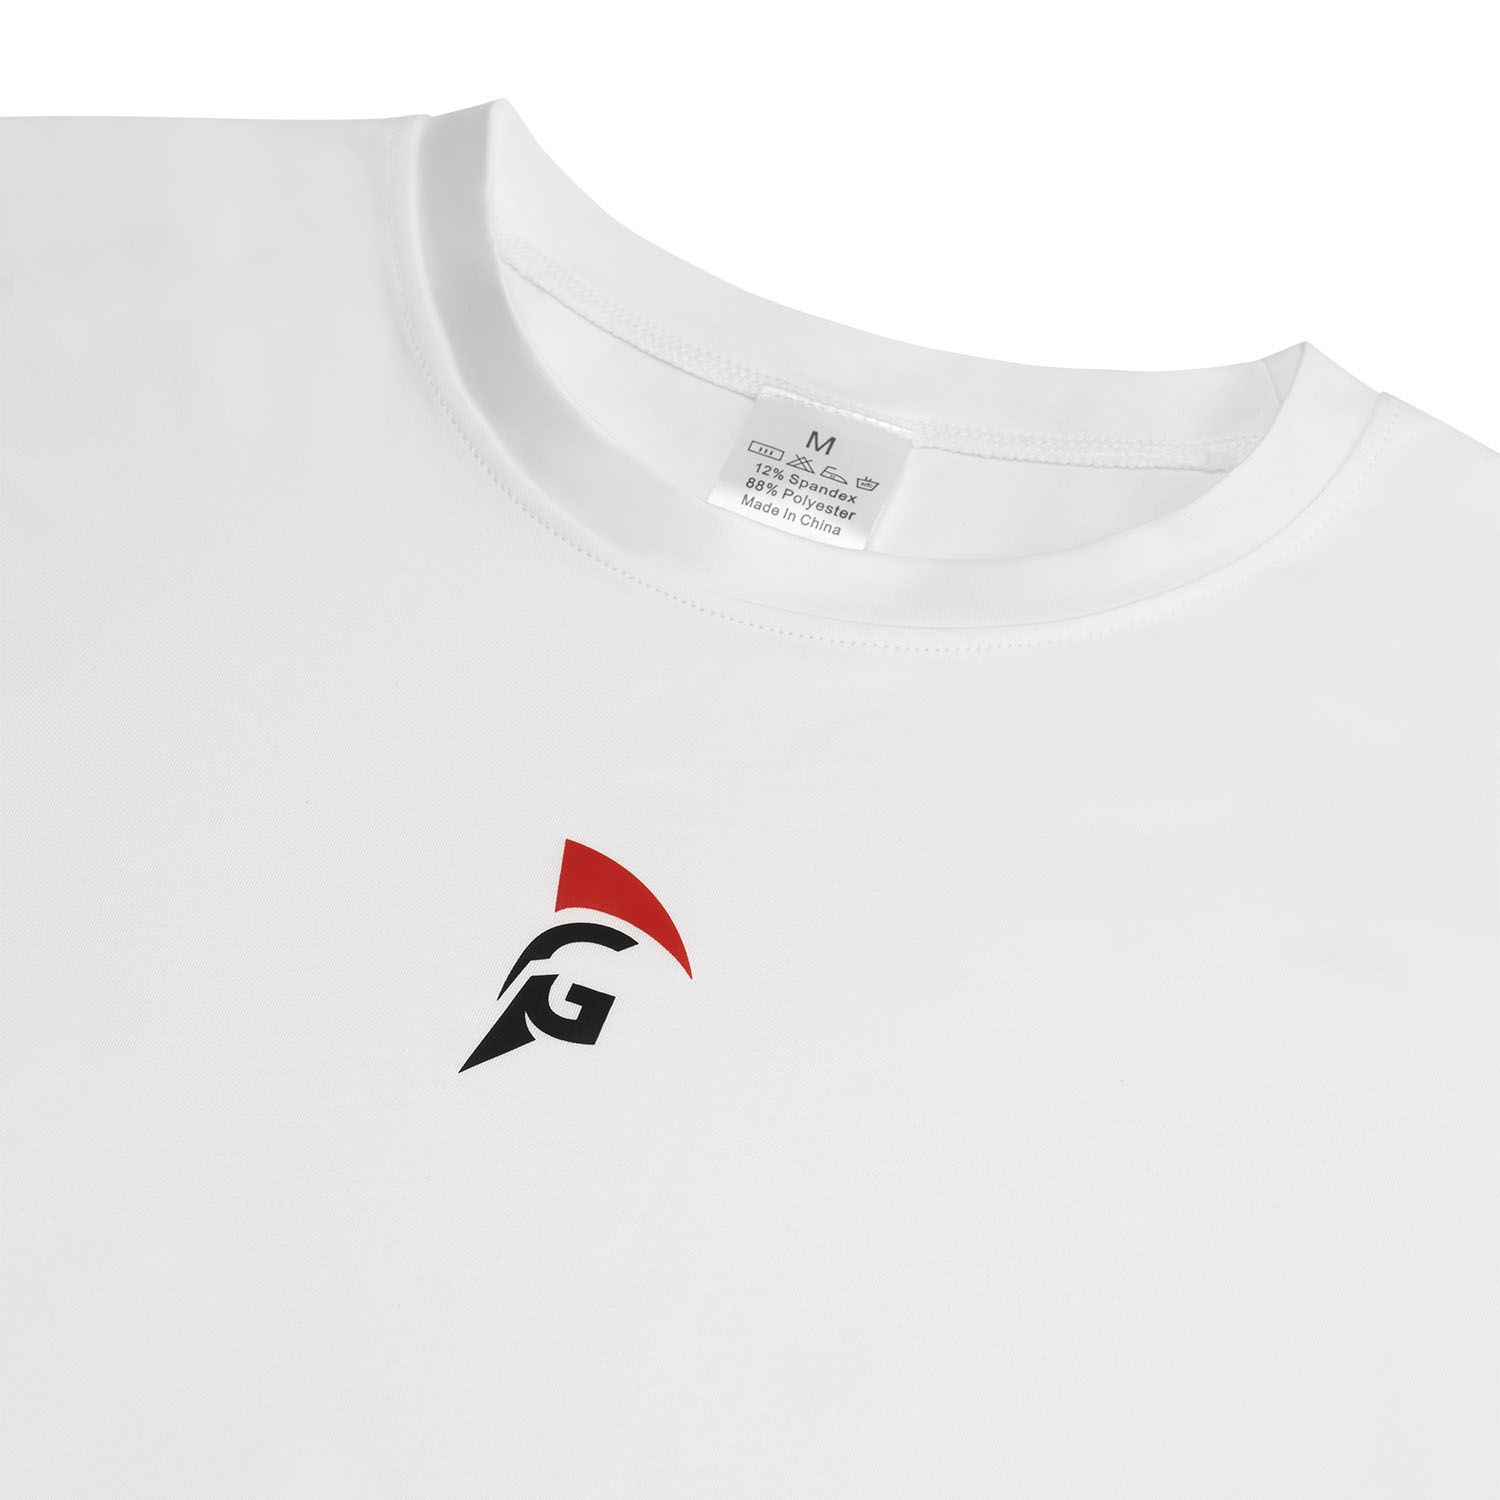 gladiator sports thermal shirt for men white detail logo